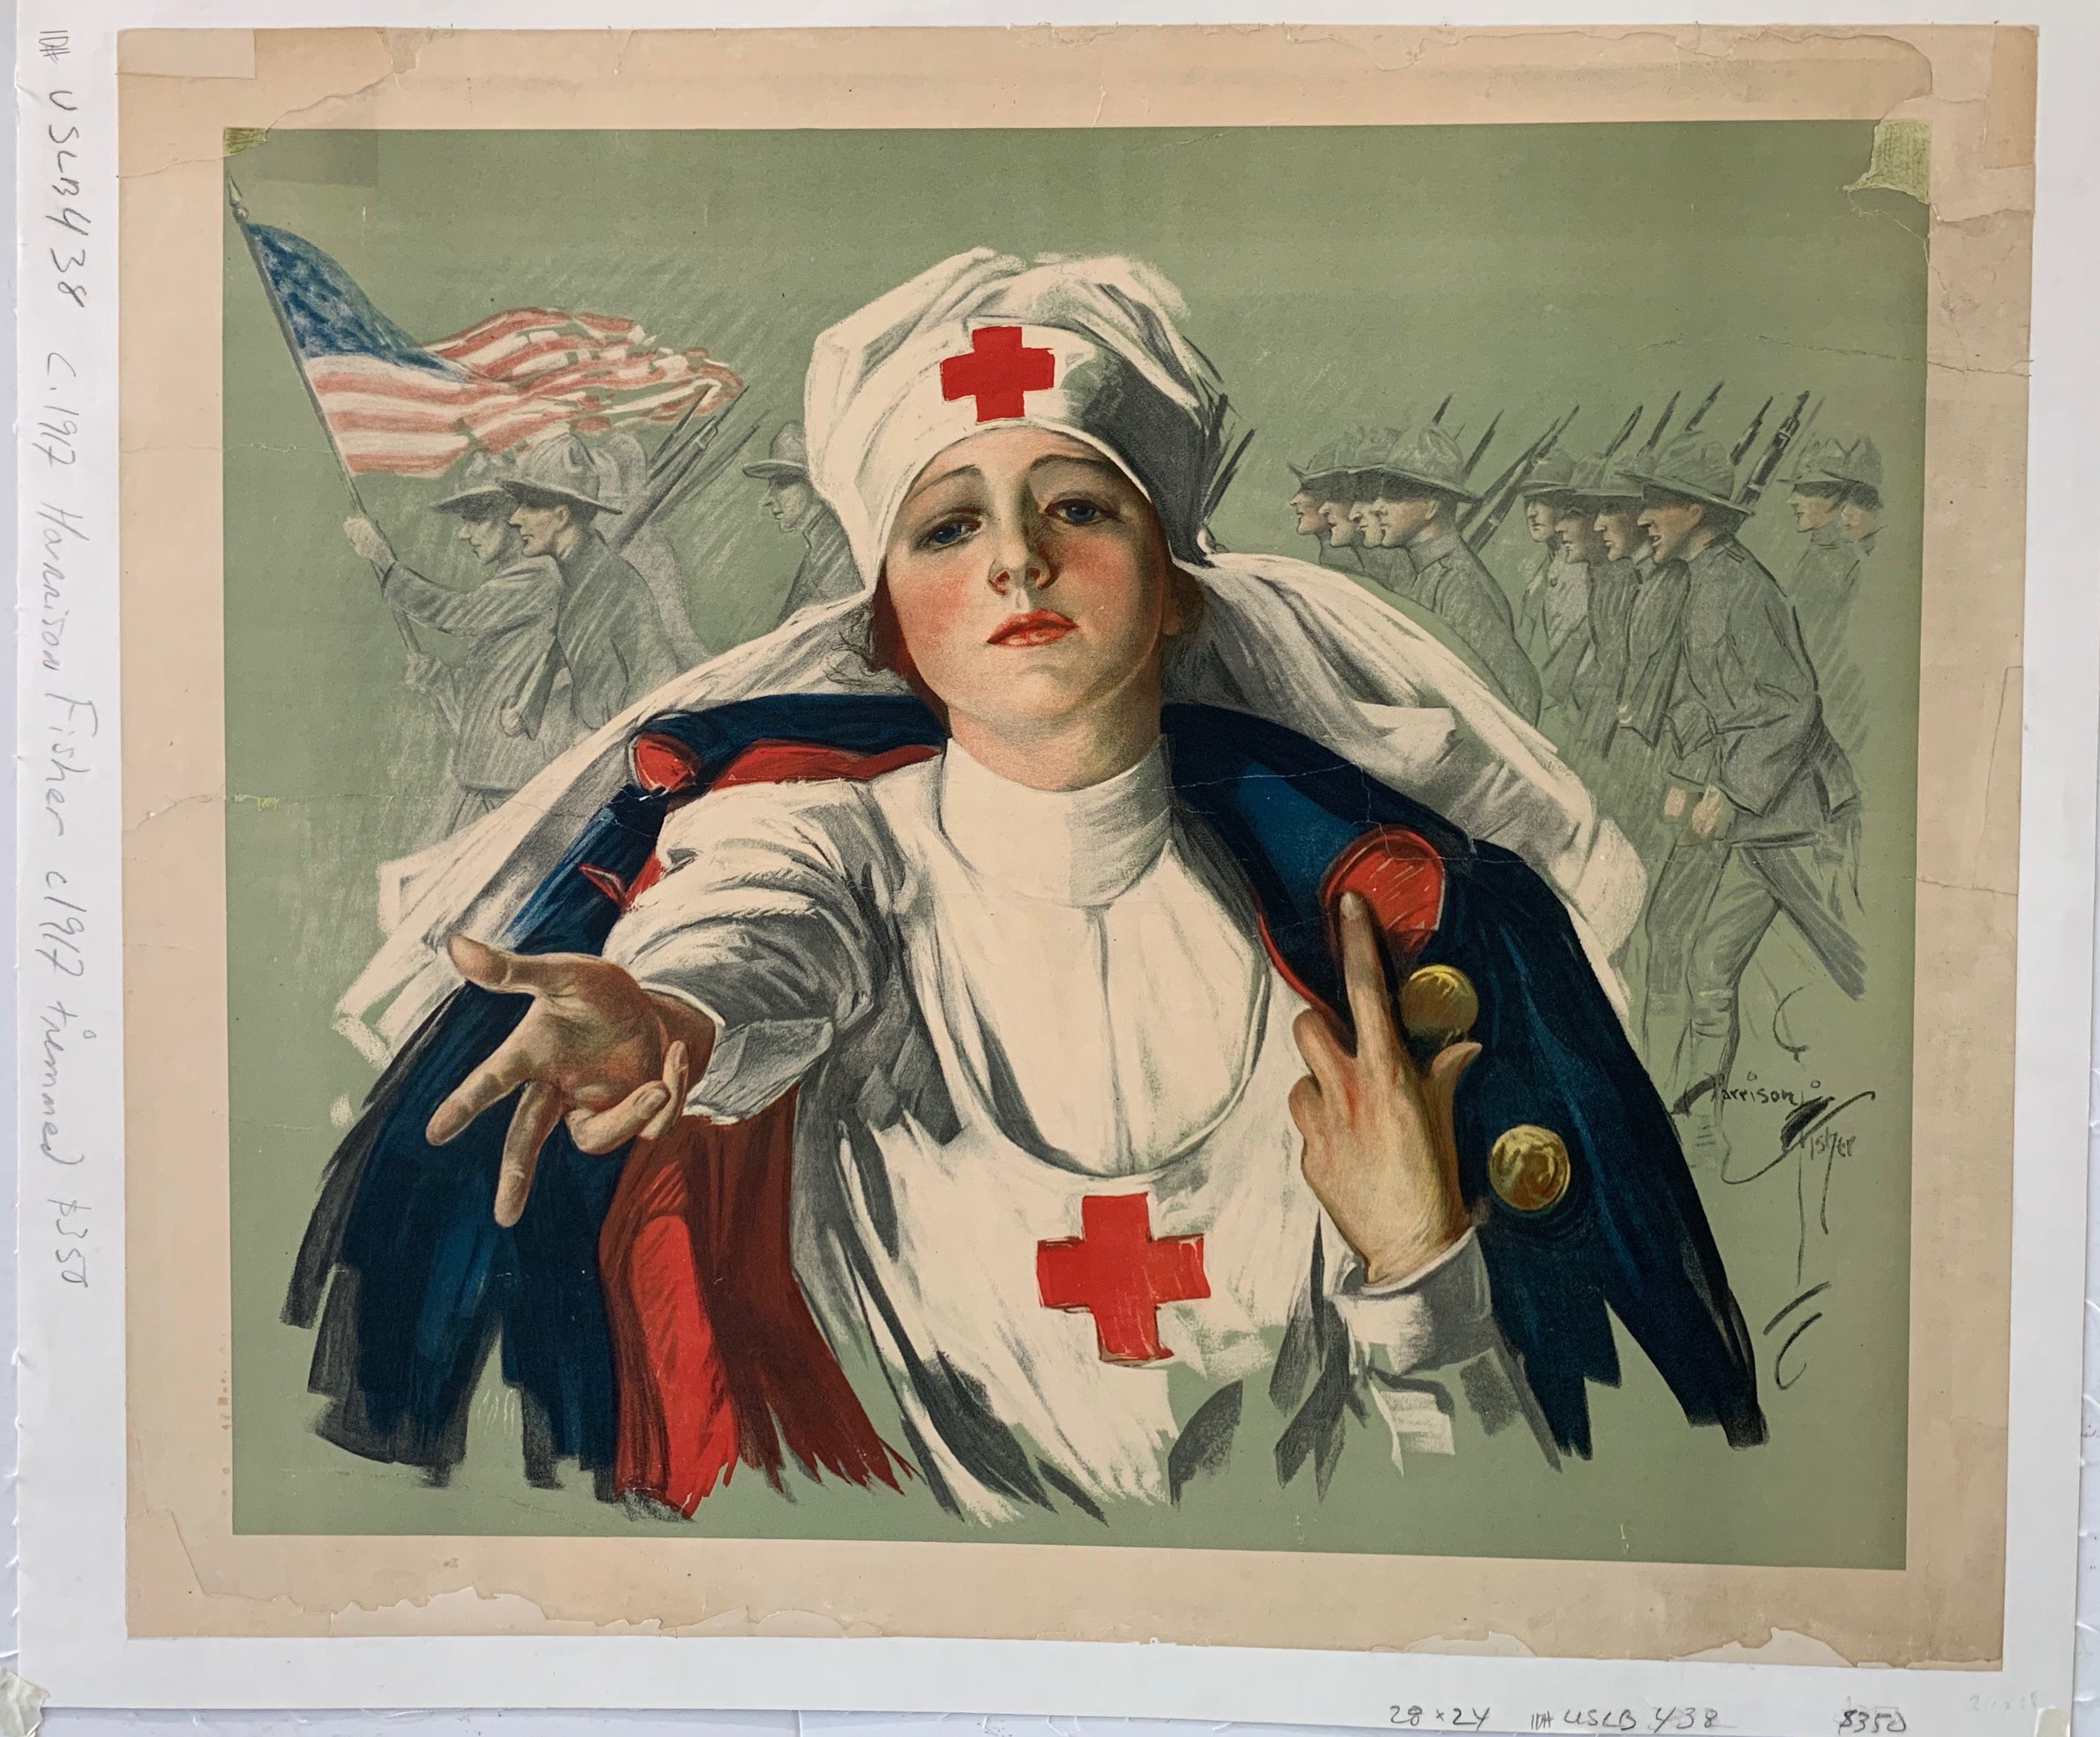 USA War Poster